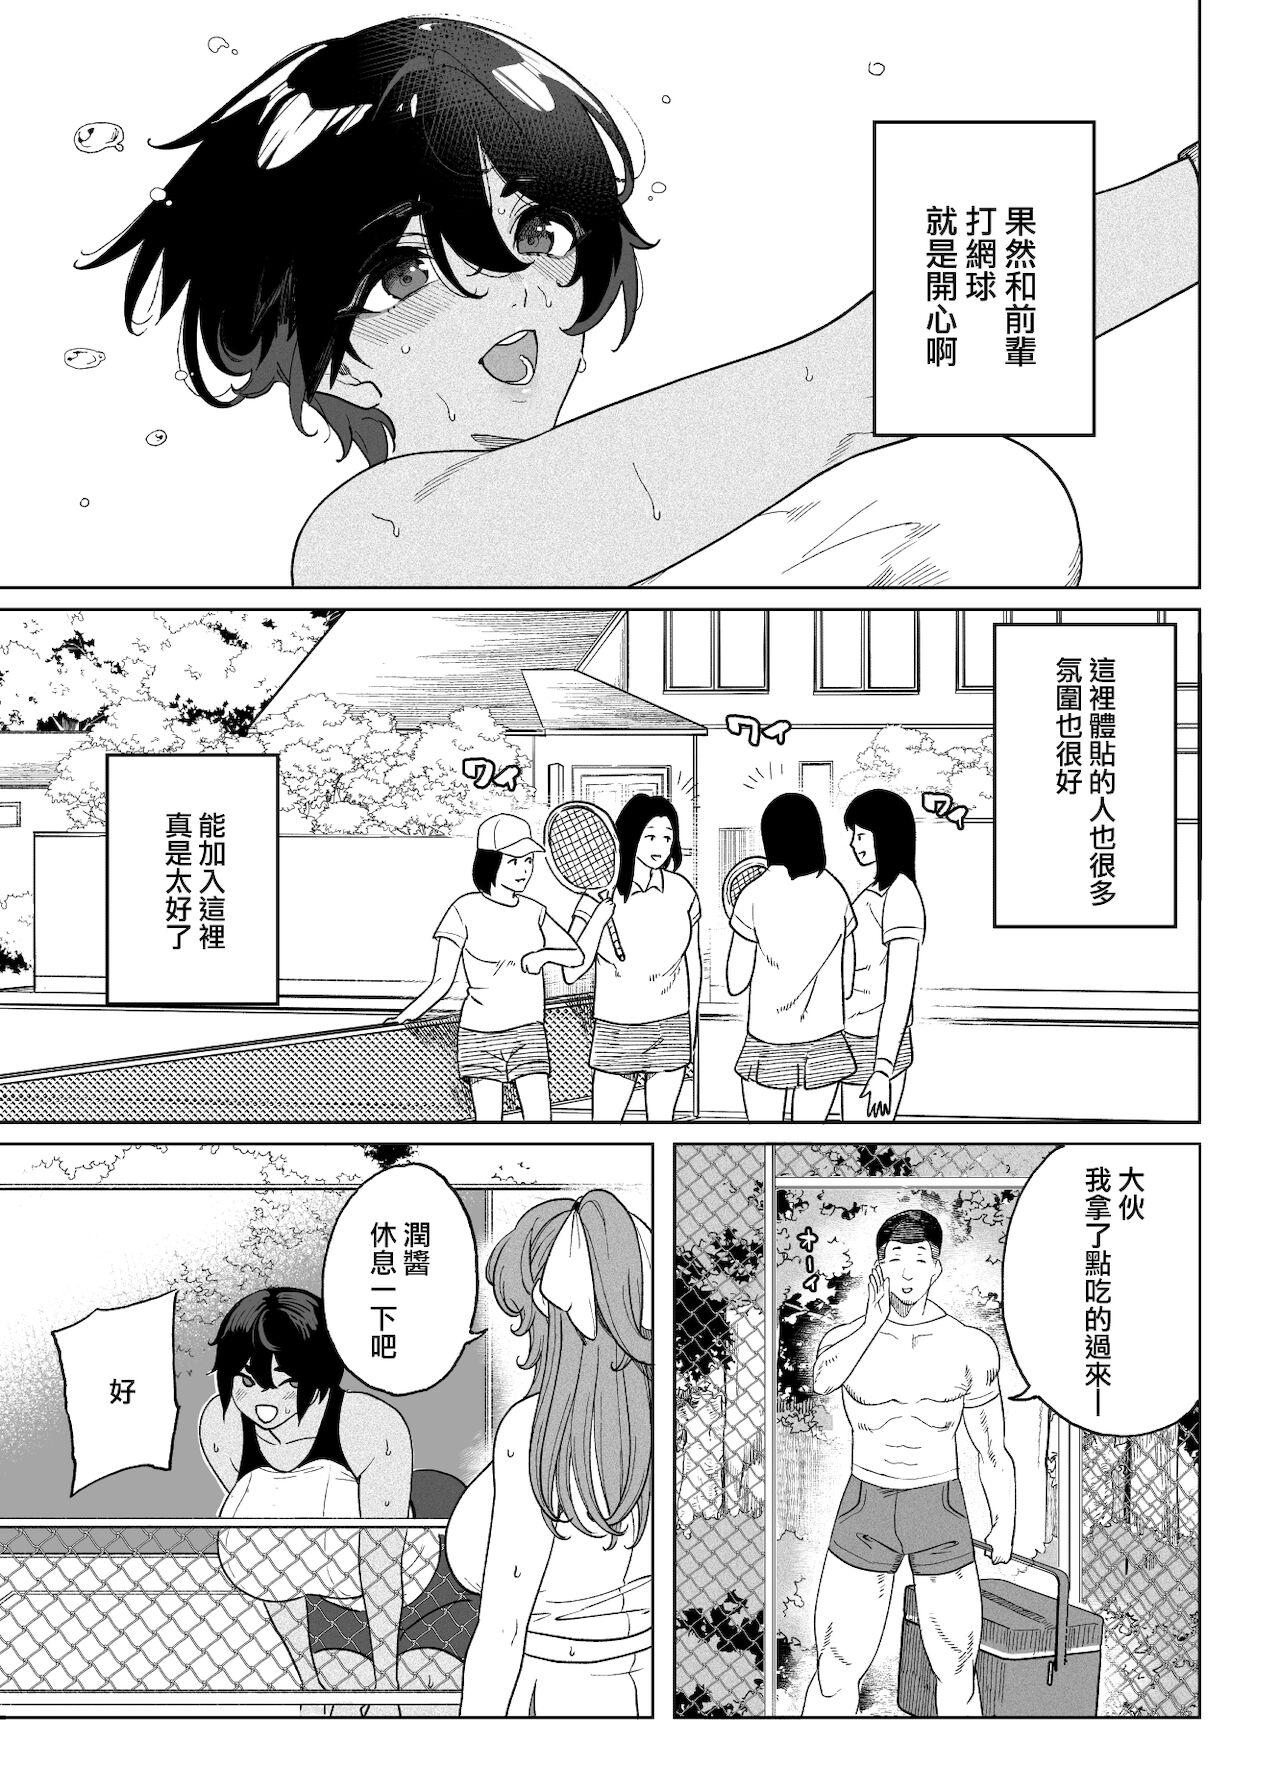 TenniCir Manga Zenpen + Chuuhen + Owari 7